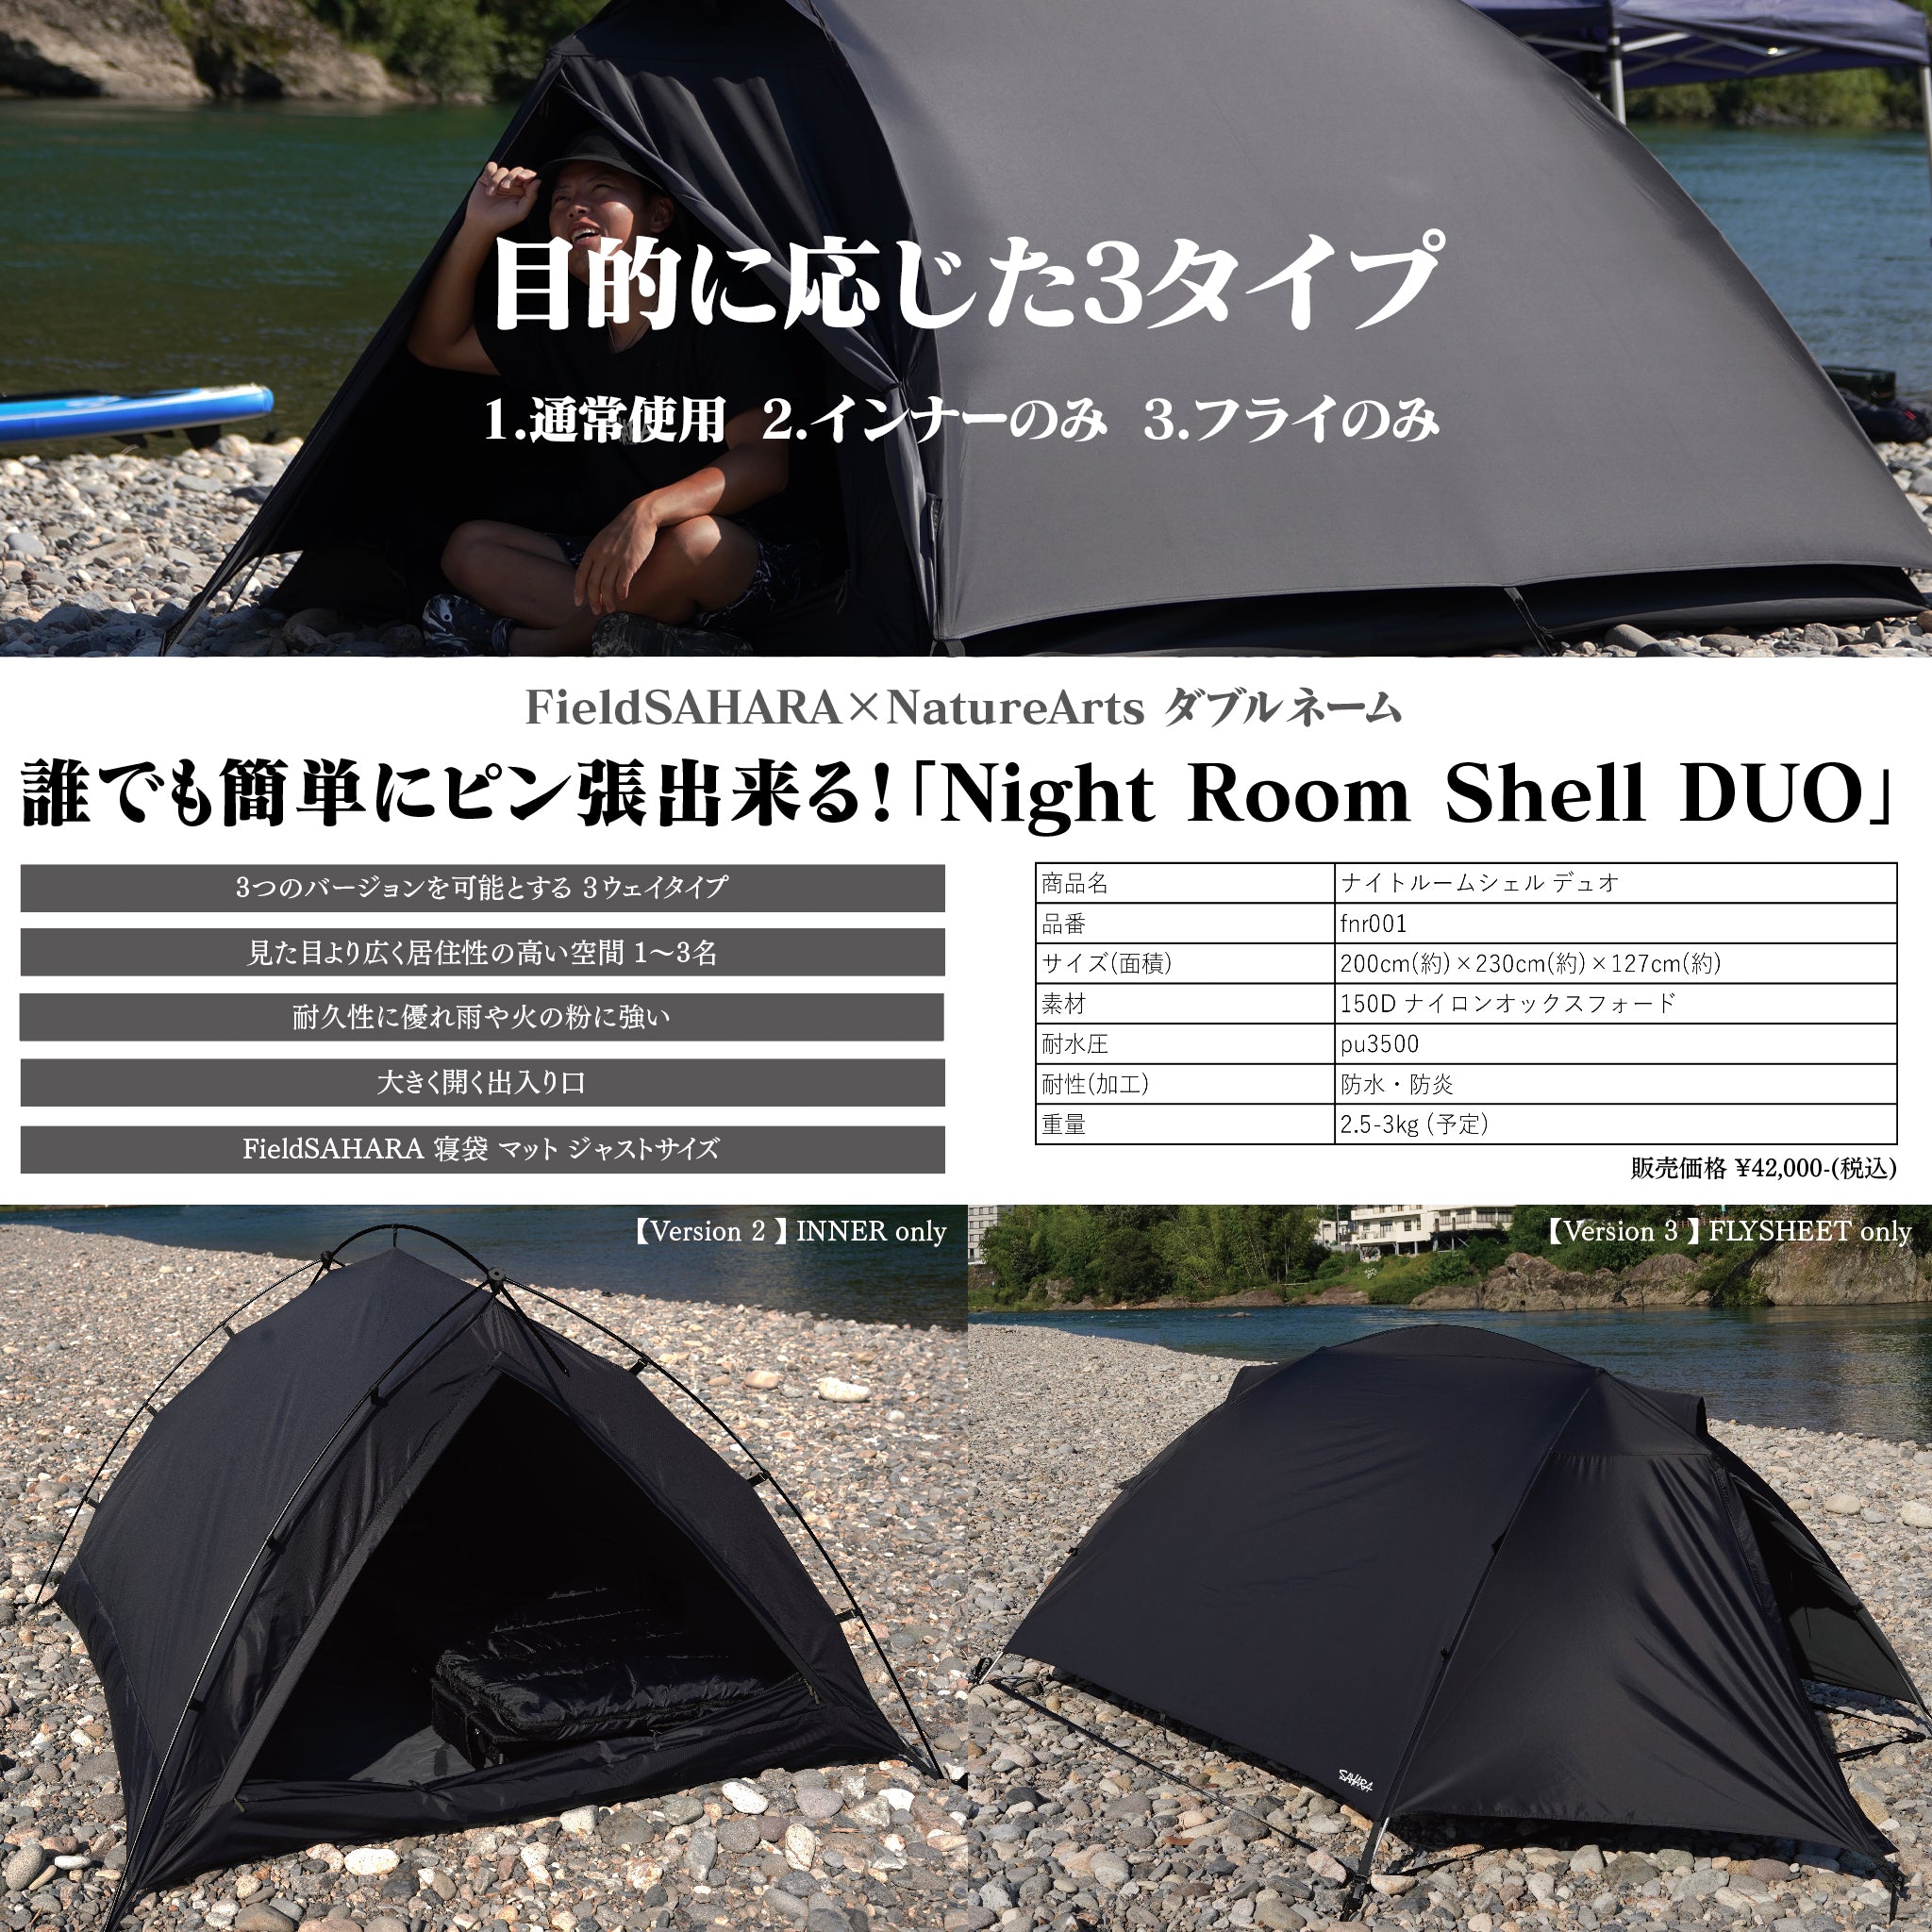 FieldSAHARA Night Room Shell Duoドーム型ソロテント